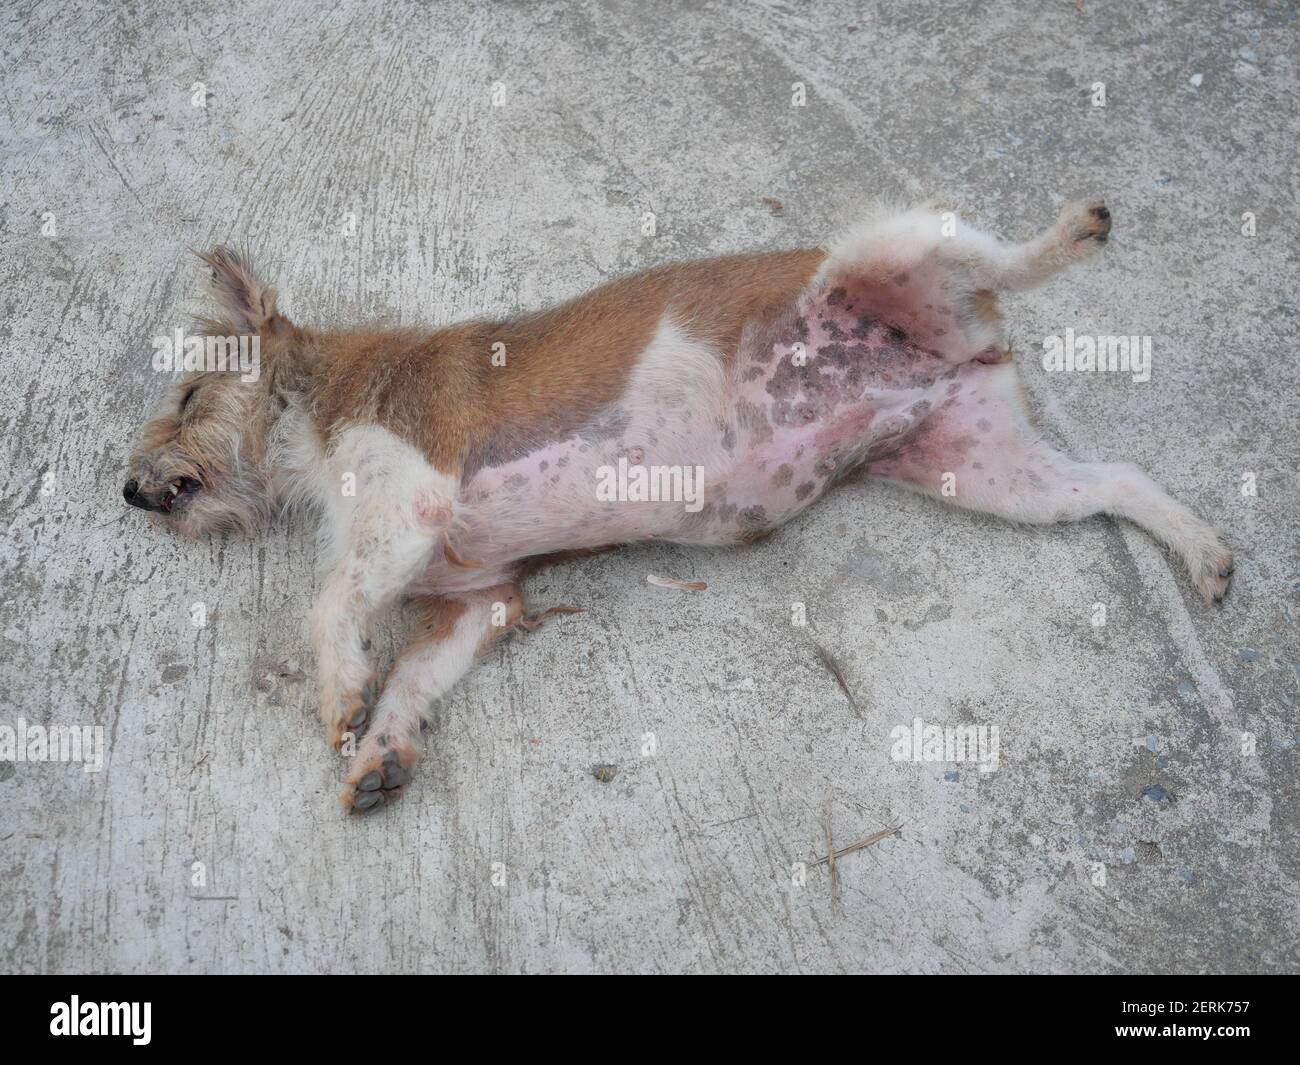 Il cane marrone furry disteso gamba e ventre rivelante è pieno di eruzione rossa su terra grigia, divertente e comportamento carino degli animali domestici Foto Stock